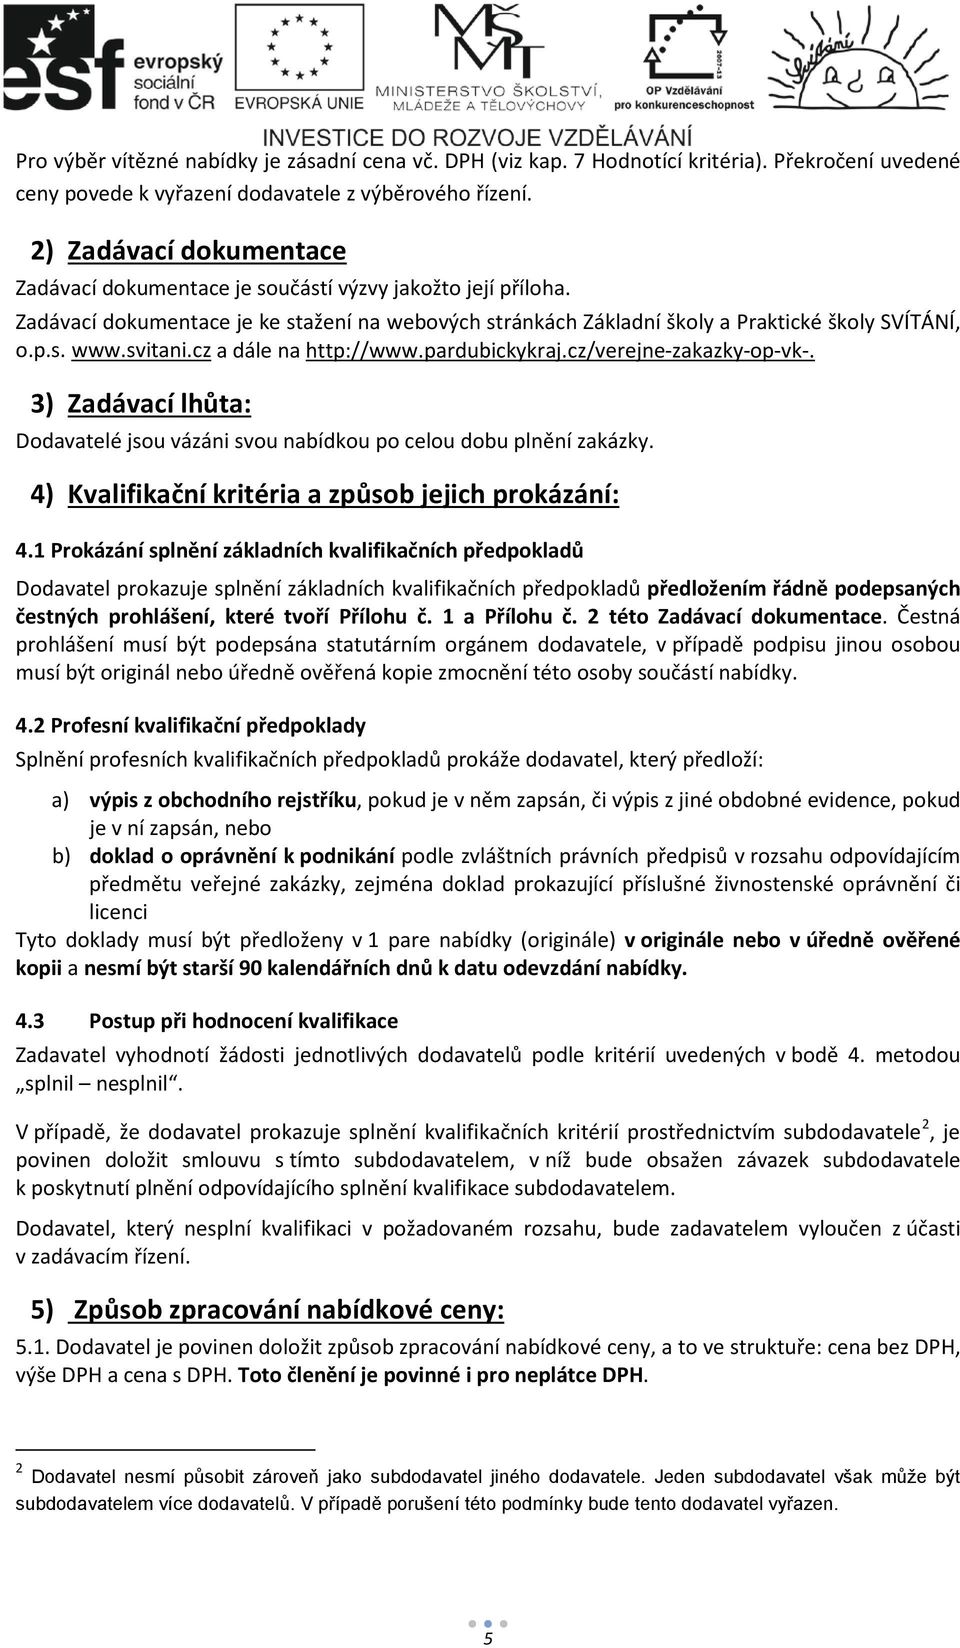 svitani.cz a dále na http://www.pardubickykraj.cz/verejne-zakazky-op-vk-. 3) Zadávací lhůta: Dodavatelé jsou vázáni svou nabídkou po celou dobu plnění zakázky.